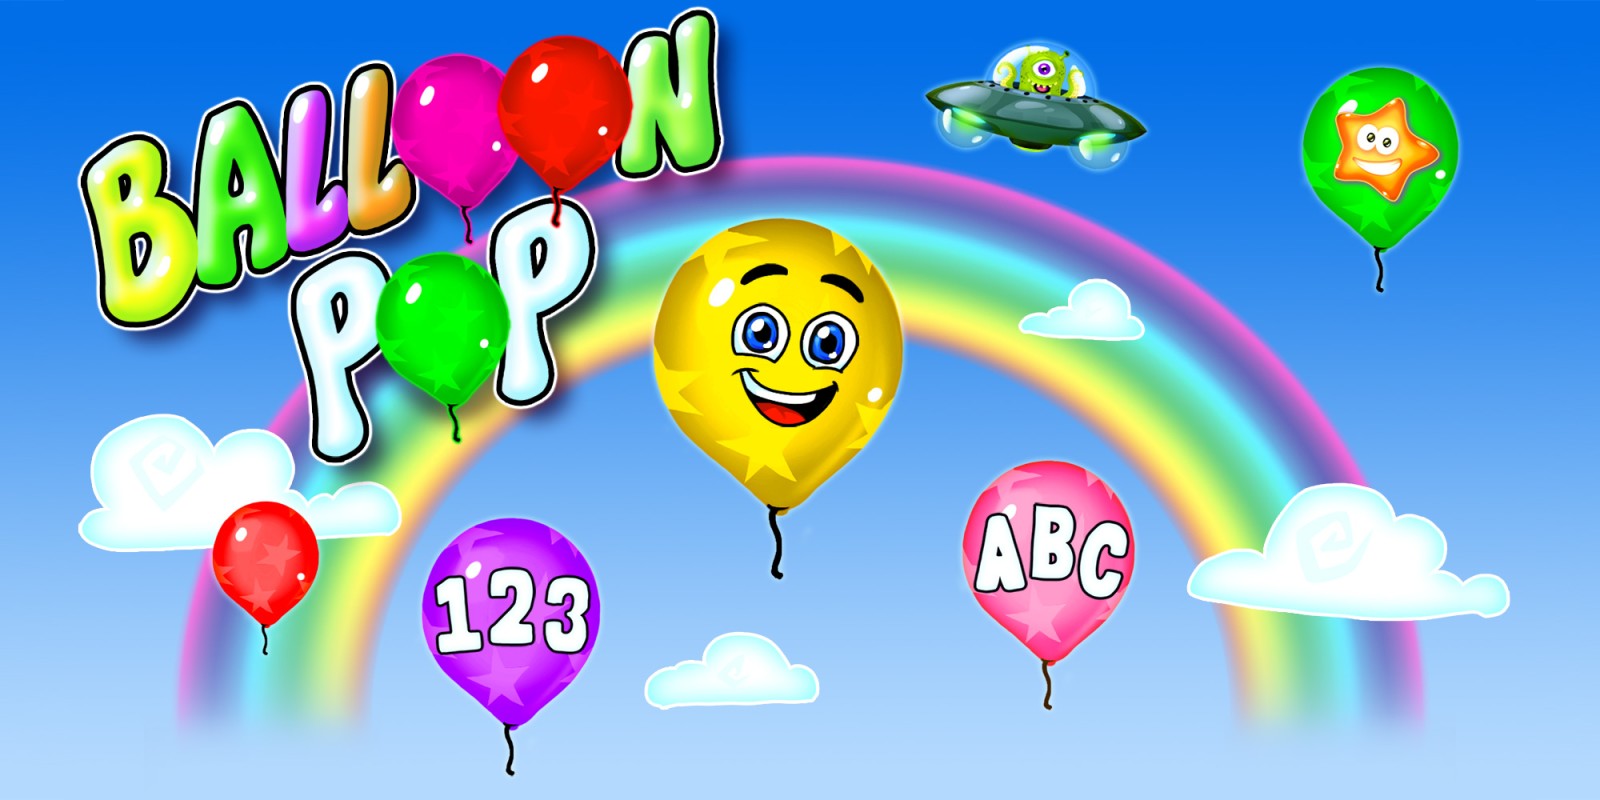 Balloon Pop – Educatieve game met ballonnen voor kleuters en peuters - leer cijfers, letters, vormen en kleuren in 14 talen